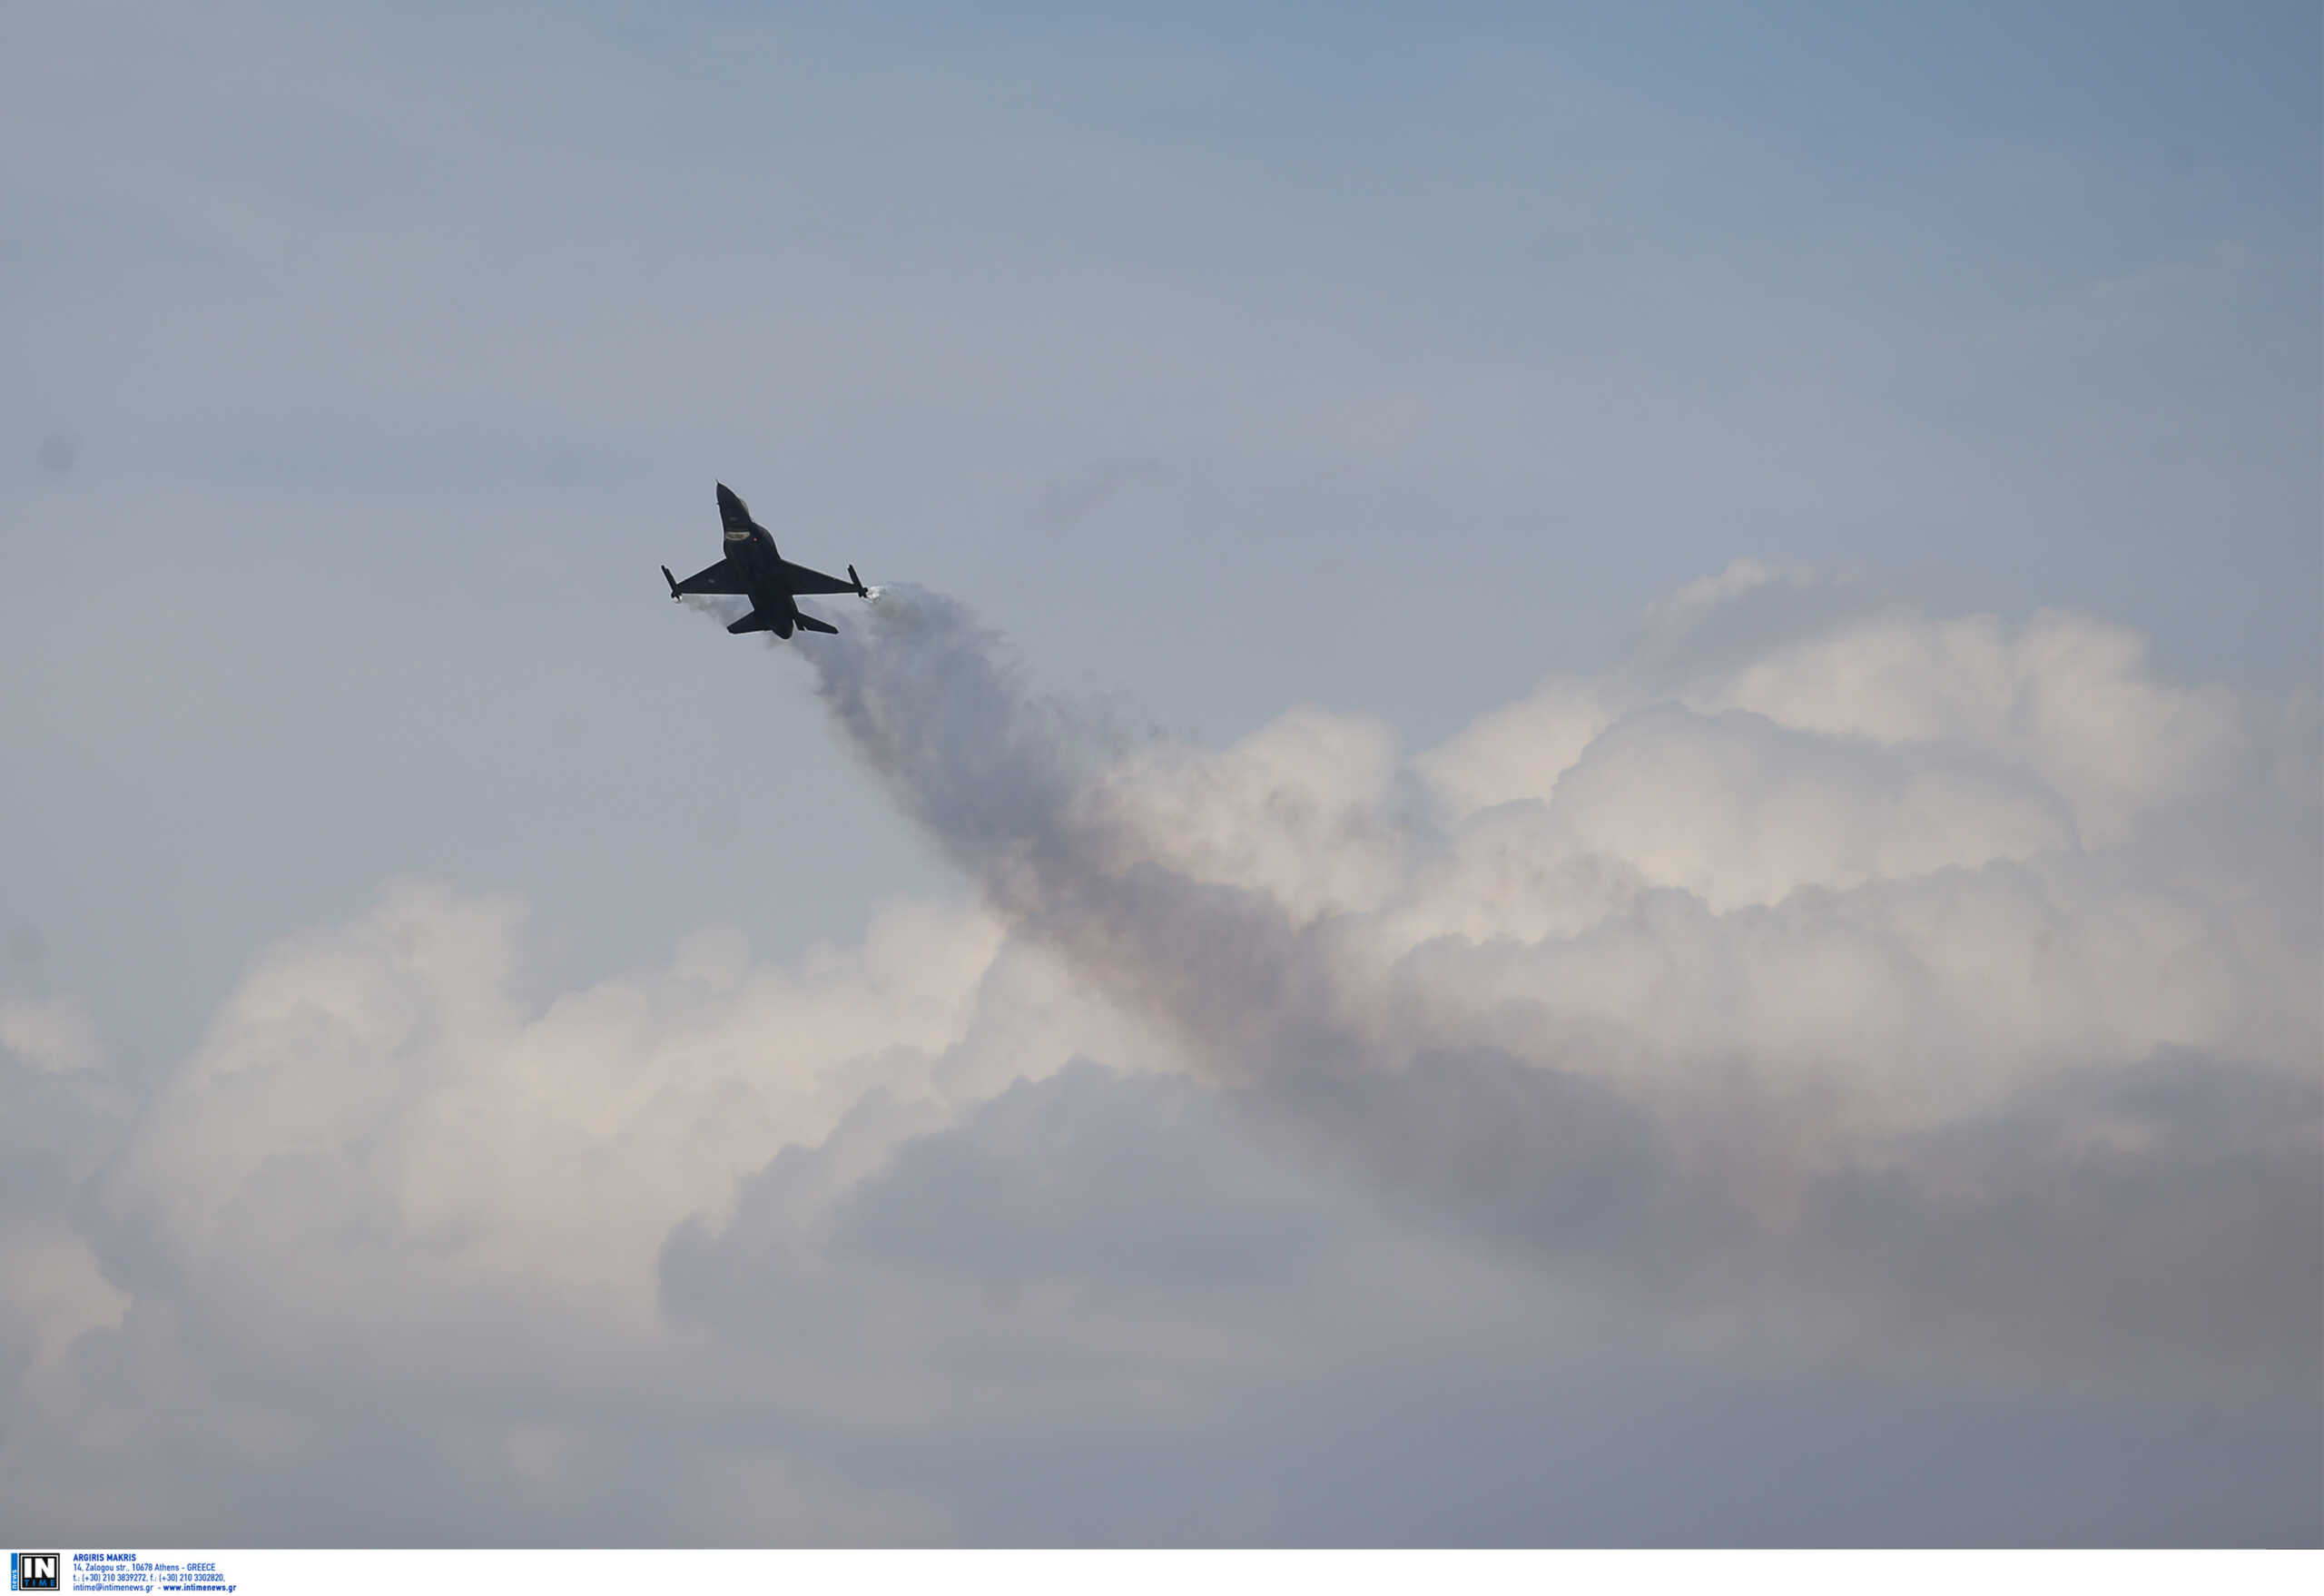 Πτώση Φάντομ στην Ανδραβίδα: «Όποιο αεροσκάφος πετάει με πιστοποίηση είναι ασφαλές» λέει ο Γρηγόρης Κωνσταντέλλος